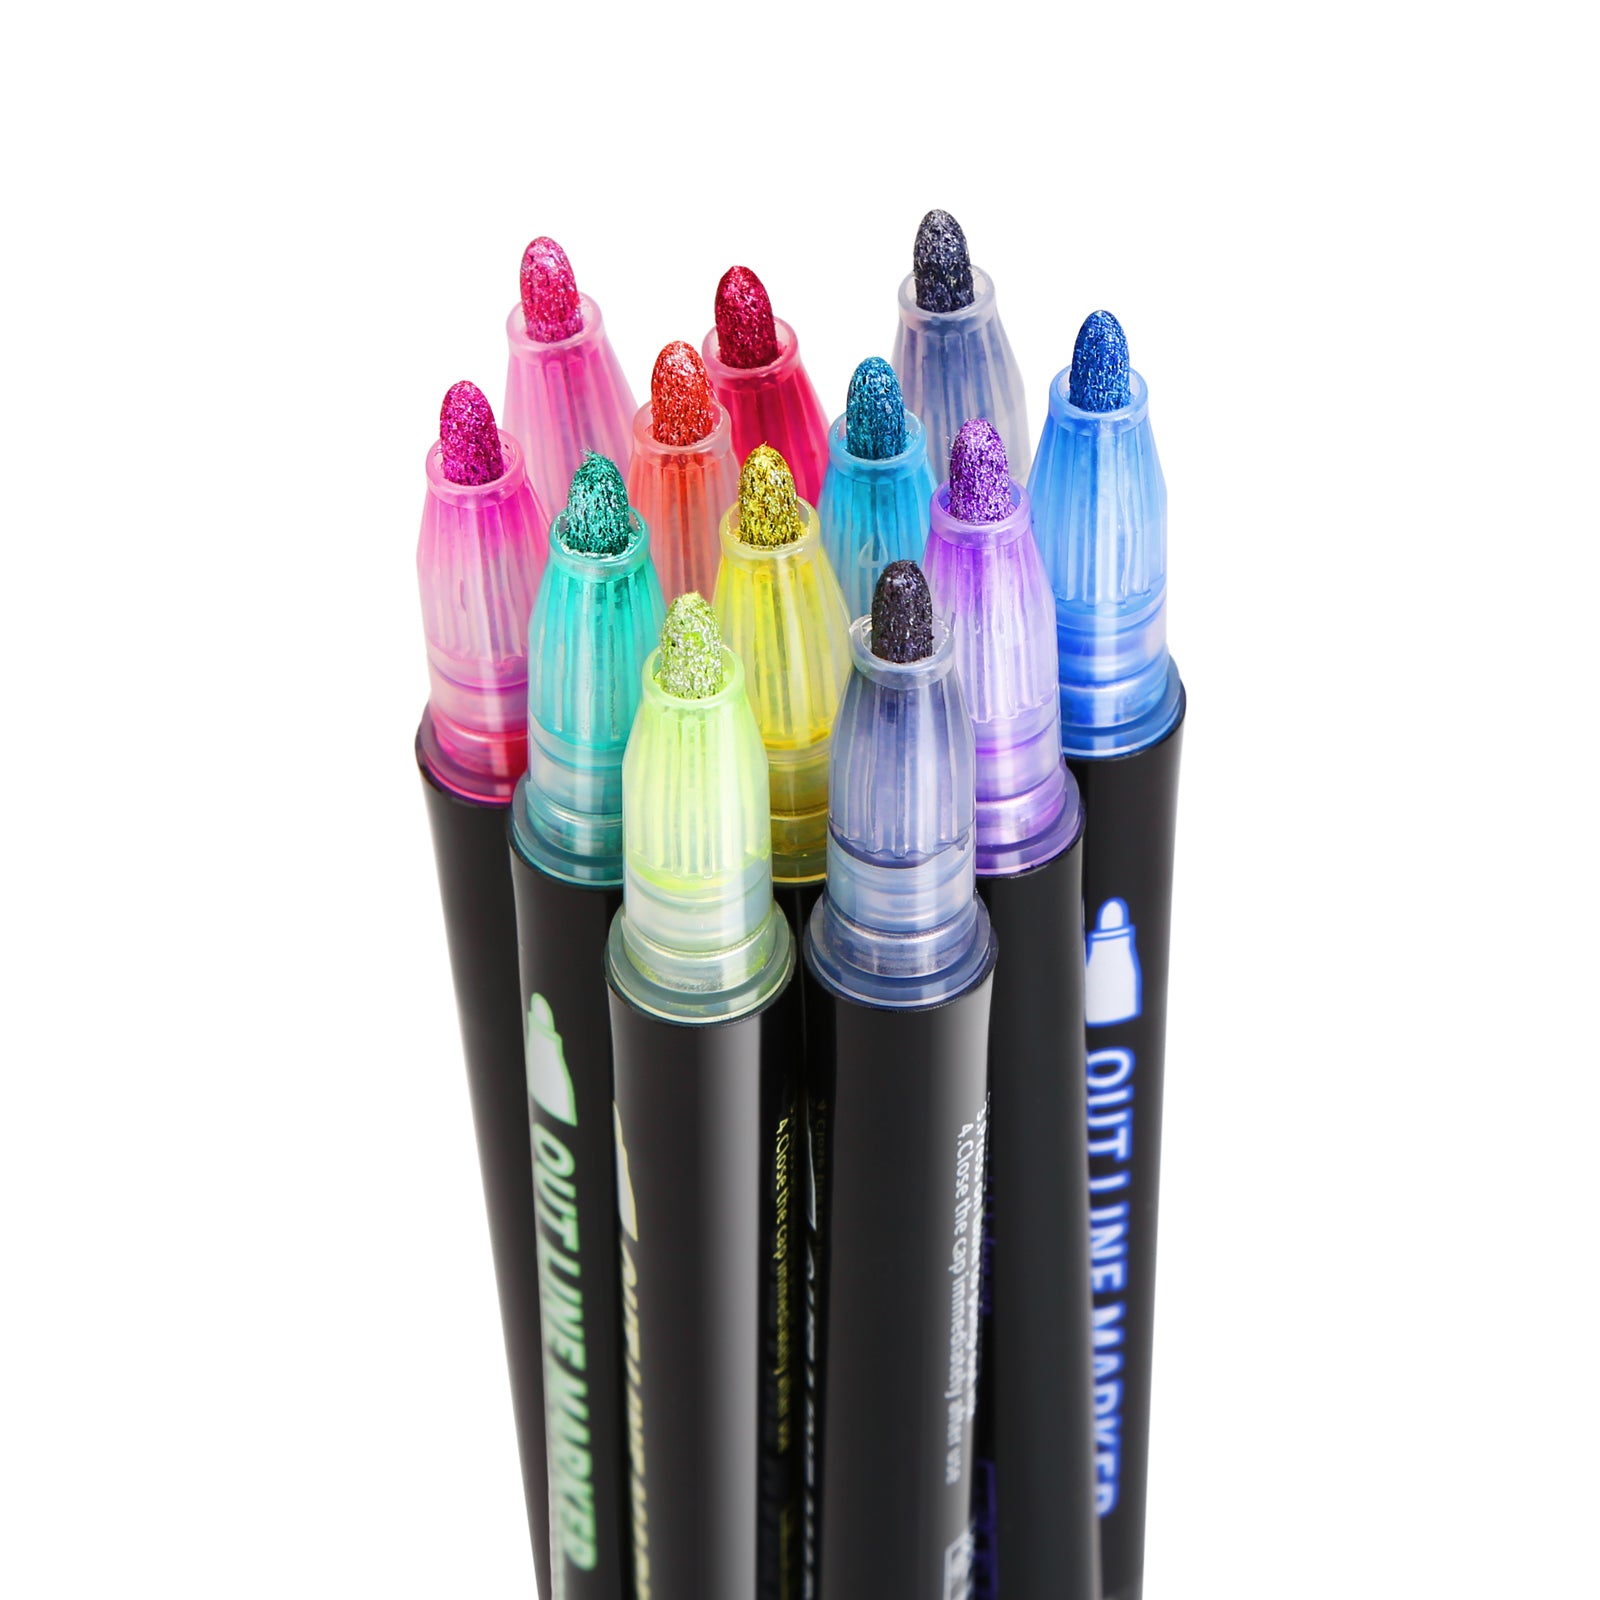 Double Line Metallic Markers,Inoranges Outline Metal Marker Pens